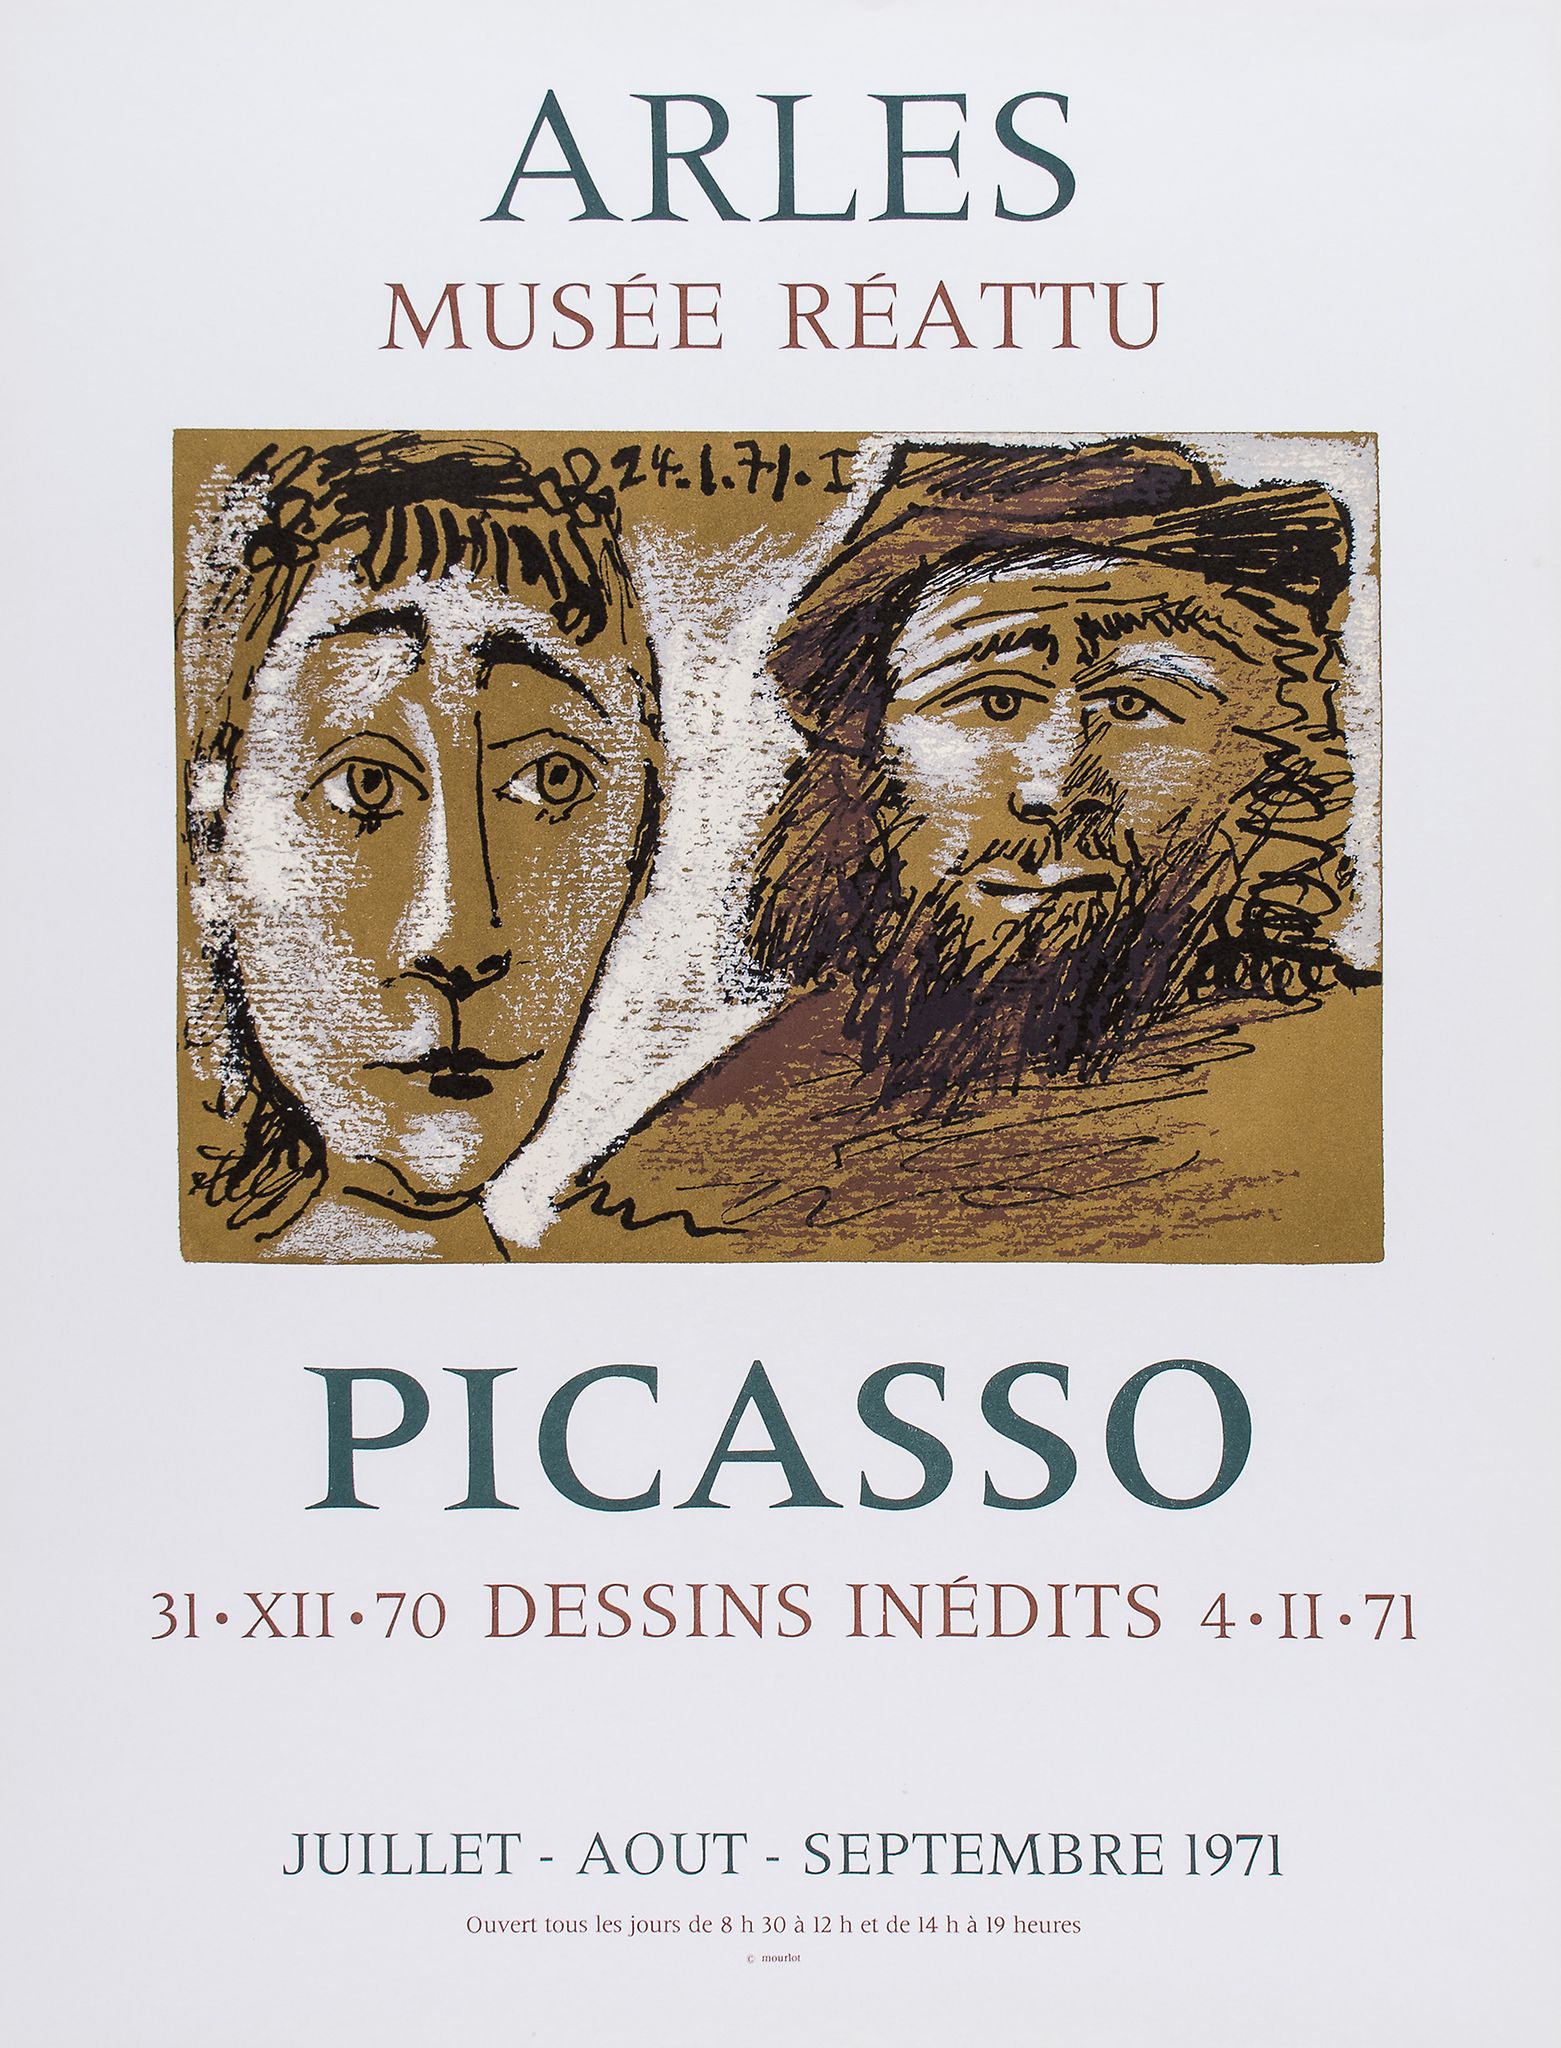 Pablo Picasso (1881-1973)(after) - 172 Dessins Récenzs; Arles Musée Réattu; Exposition de - Image 2 of 2